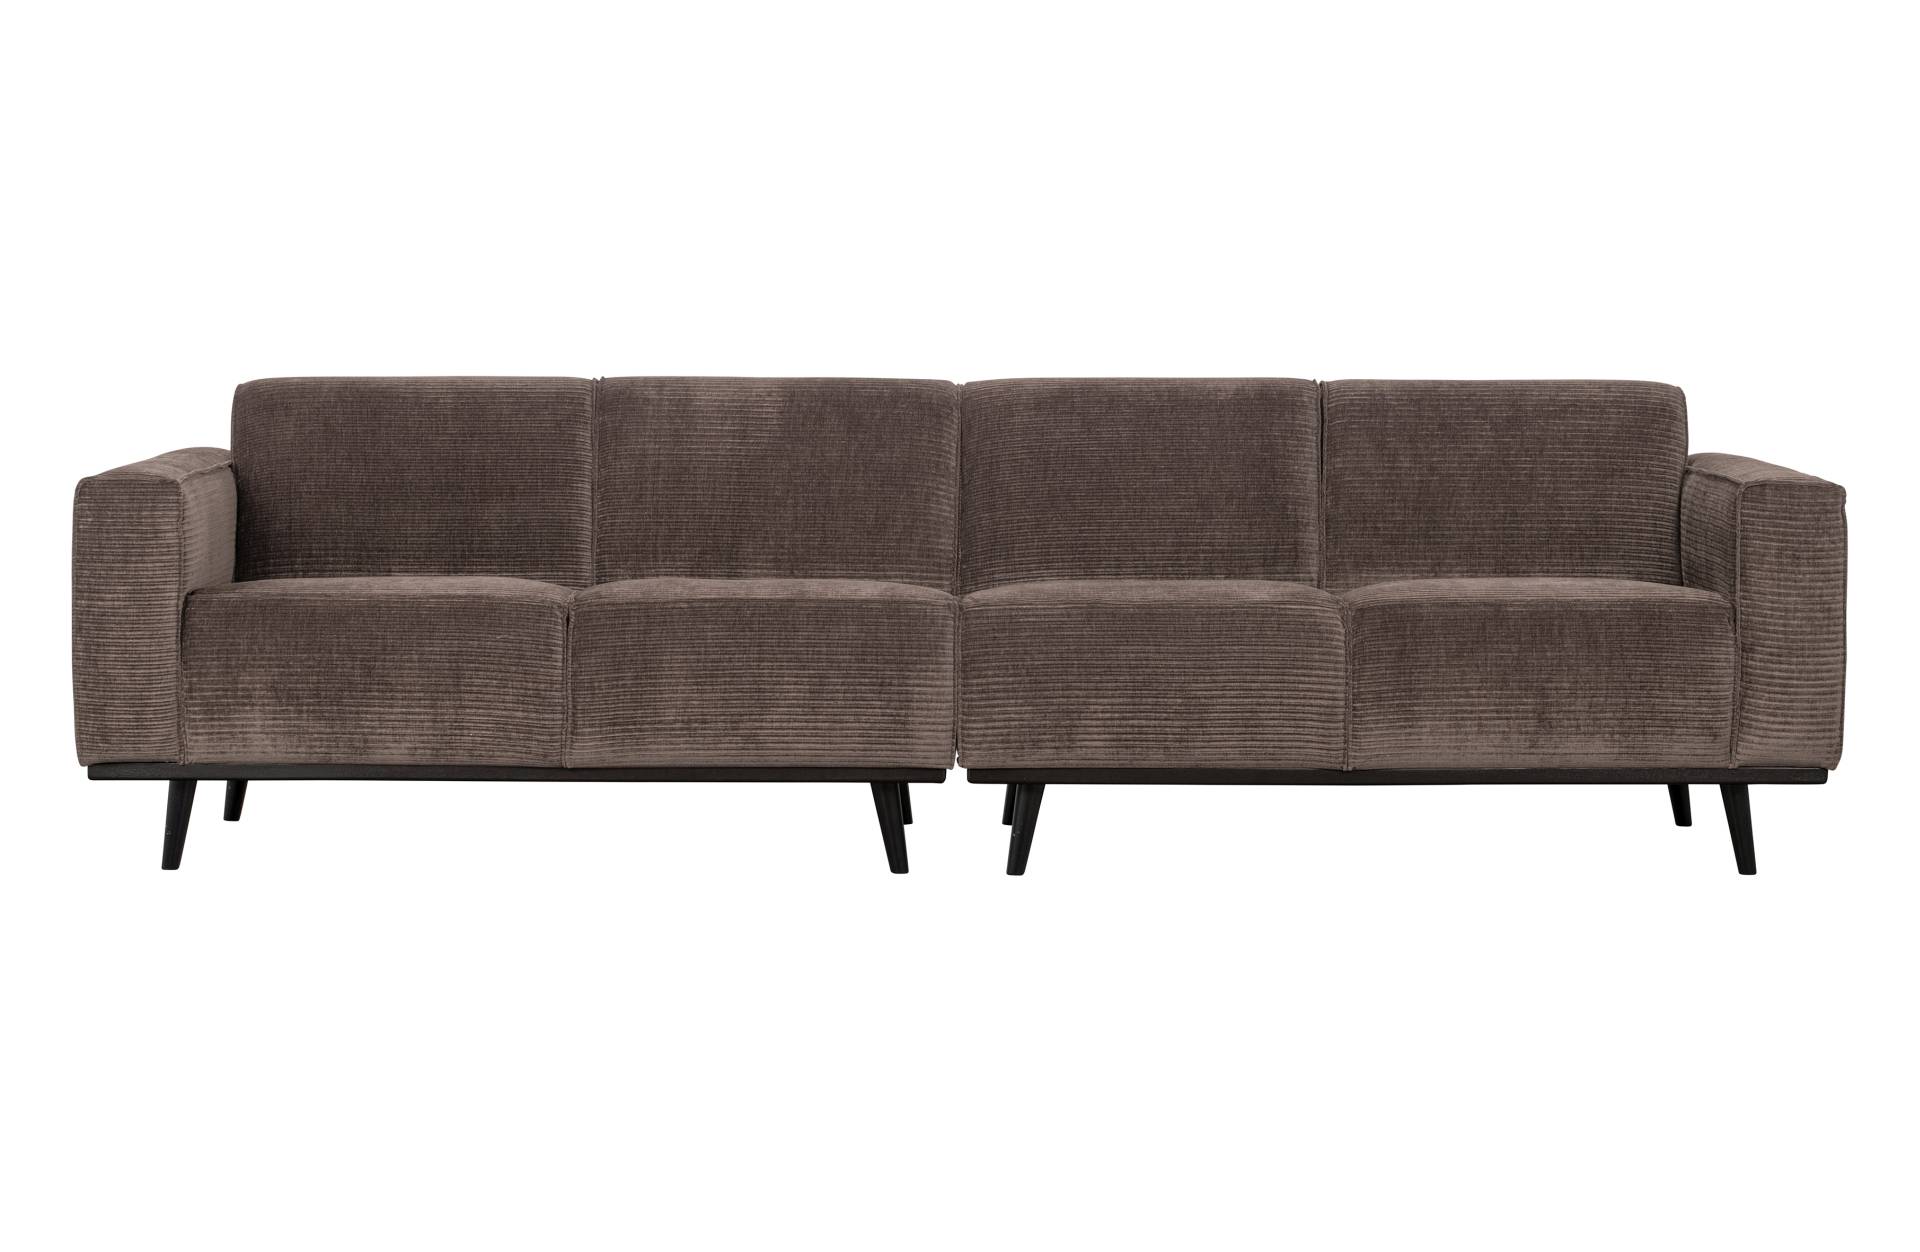 Das Sofa Statement überzeugt mit seinem modernen Design. Gefertigt wurde es aus gewebten Jacquard, welches einen Taupe Farbton besitzen. Das Gestell ist aus Birkenholz und hat eine schwarze Farbe. Das Sofa hat eine Breite von 280 cm.